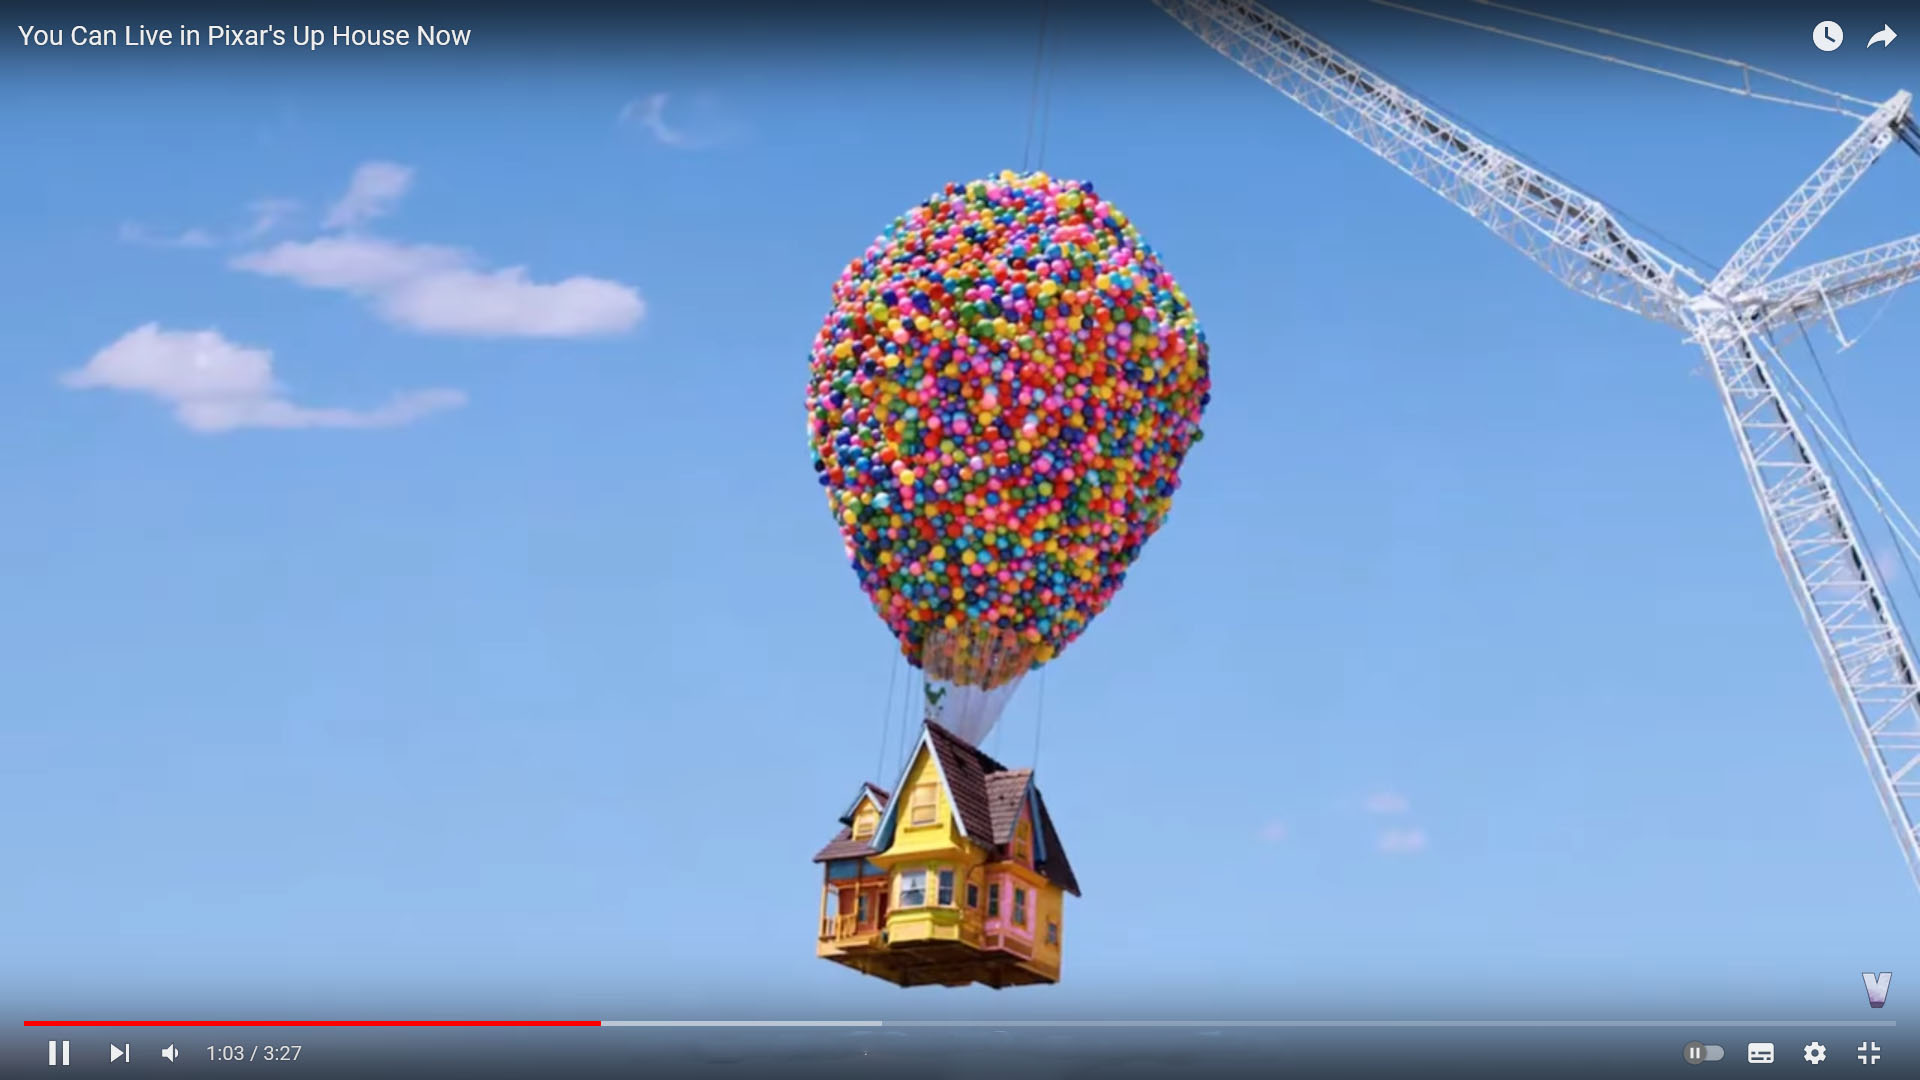 Цитата из видео «You Can Live in Pixar’s Up House Now» пользователя Vailskibum, youtube.com